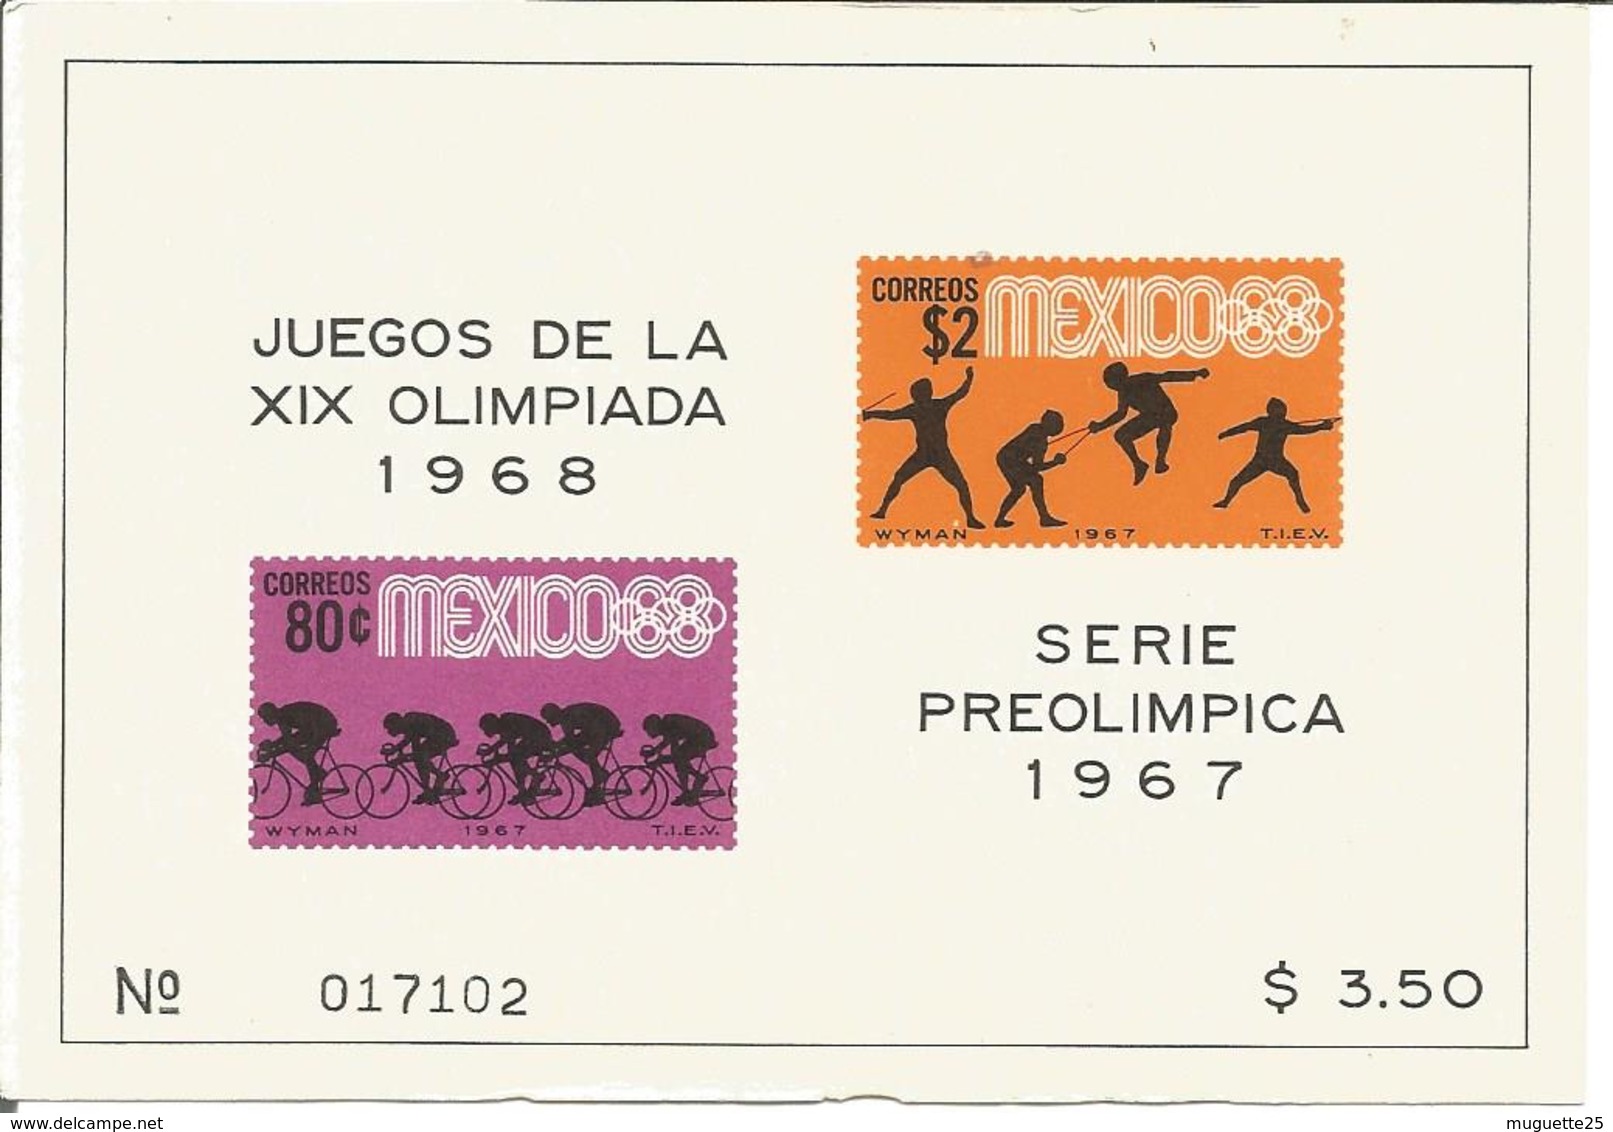 Jeux Olympiques > Ete 1968: Mexico lot de 7 blocs feuillets